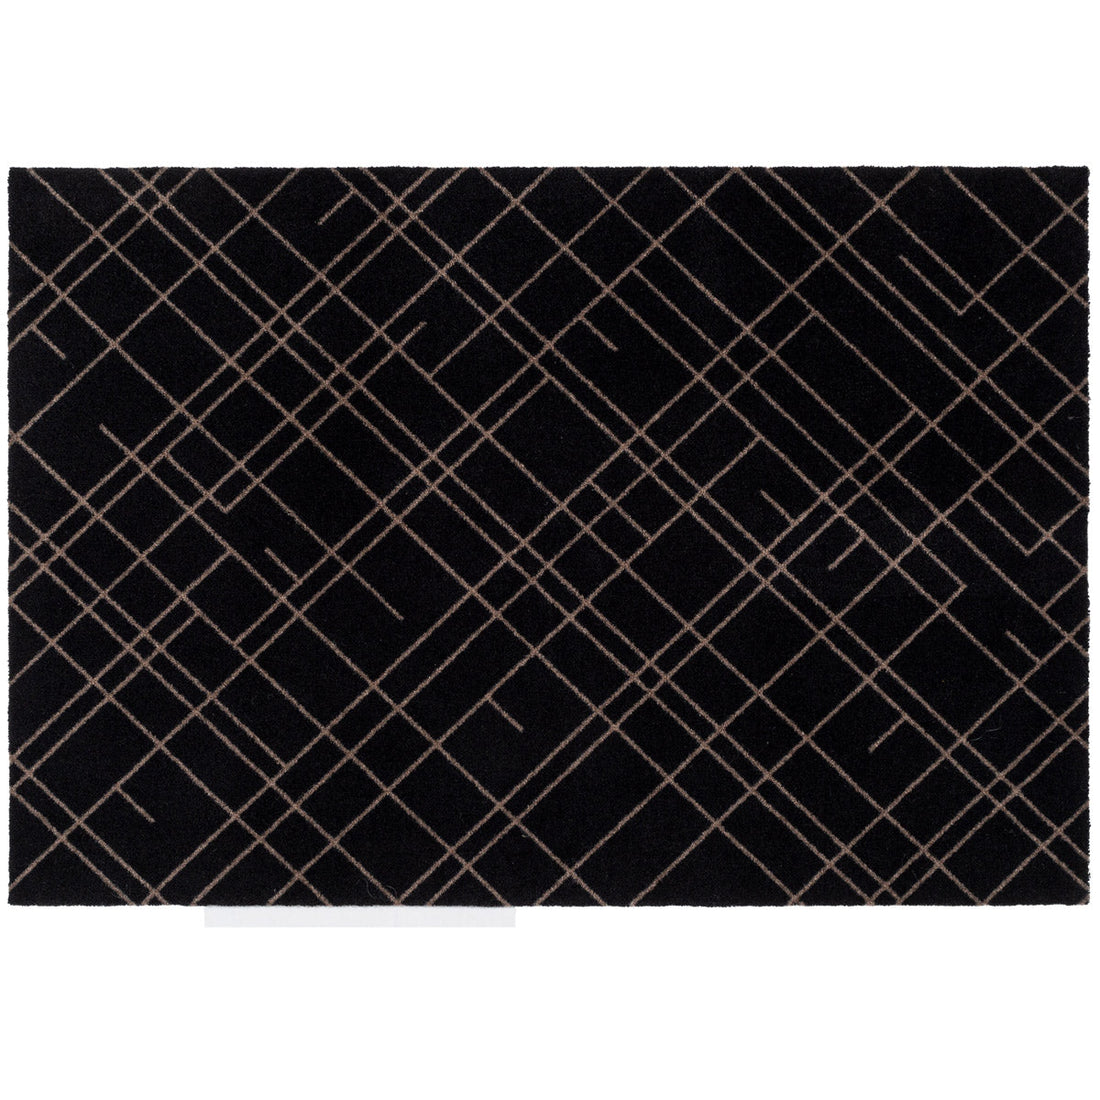 Golvmatta 90 x 130 cm - linjer/sand svart